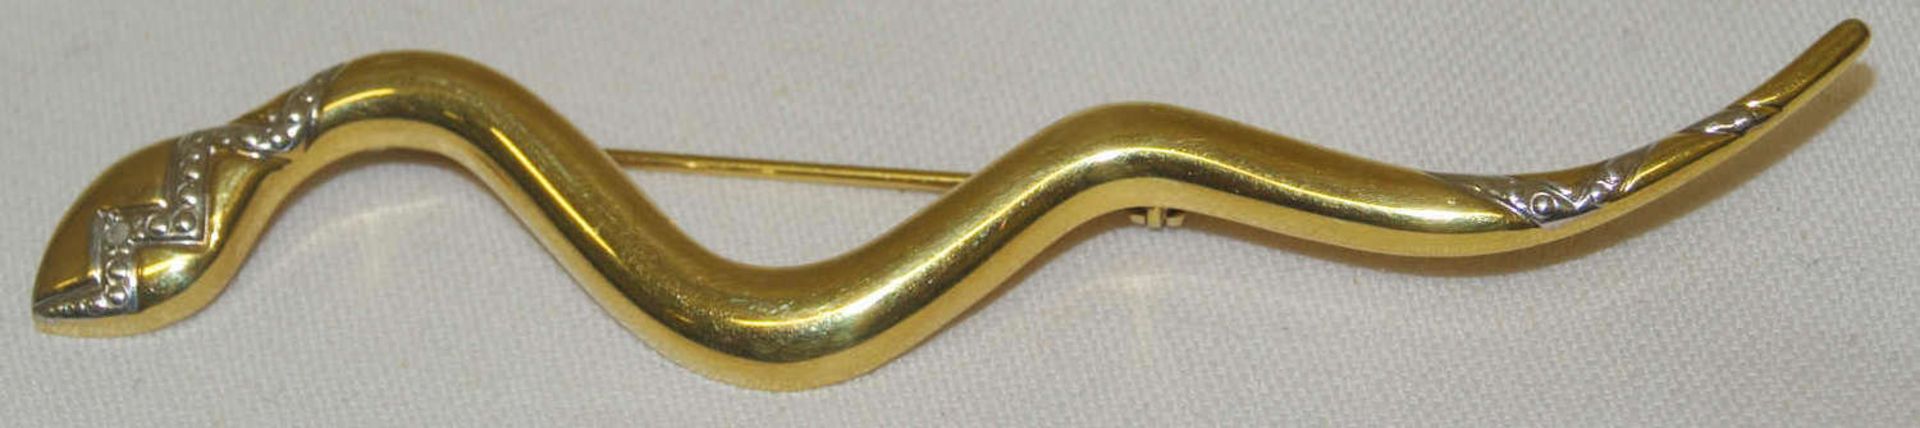 1 Brosche in Form einer Schlange, 585er Gelbgold, Länge ca. 9,4 cm Gewicht ca. 4,1 gr. 1 brooch in